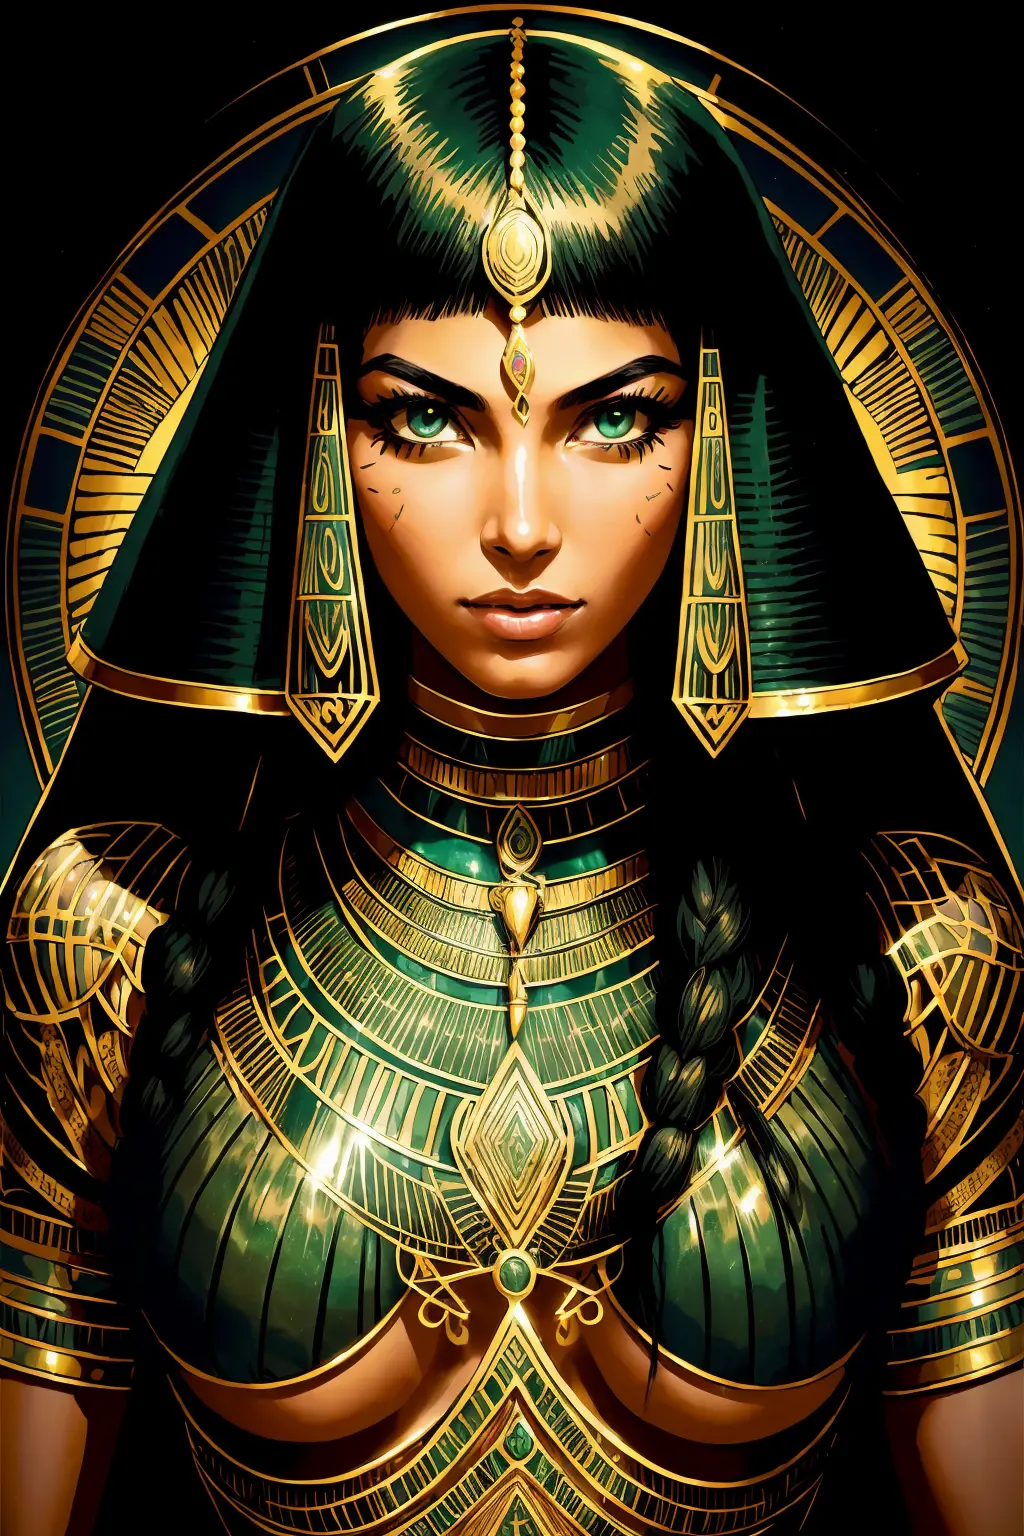 ผู้หญิงอียิปต์ผู้ใหญ่ 1 คน, ตาสีเขียว, ปีกผมสีดำ, ภาพเหมือน, ตามลำพัง, ร่างกายส่วนบน, มองไปที่ผู้ดู, พื้นหลังโดยละเอียด, ใบหน้าที่มีรายละเอียด,  เก่าอียิปต์AI, ธีมอียิปต์โบราณ,  นักรบป่าดุร้าย, เสื้อผ้าชนเผ่าสีชมพู, ออบซิเดียน, ท่าทางการป้องกัน, มีดหิน, พุ่มไม้, พืชมีพิษ, หิน,  อากาศชื้น, ความมืด, บรรยากาศภาพยนตร์,
ห้องมืด, แสงสลัว (zenยุ่งเหยิง, มันดาลา, ยุ่งเหยิง, enยุ่งเหยิง), (โทนสีทองและสีเขียว:0.5)
(สไตล์ 35 มม:1.1), ด้านหน้า, ผลงานชิ้นเอก, ภาพยนตร์ปี 1970, , แสงภาพยนตร์, เหมือนจริง, รายละเอียดความถี่สูง, ฟิล์ม35มม, (เนื้อฟิล์ม), เสียงฟิล์ม,
 